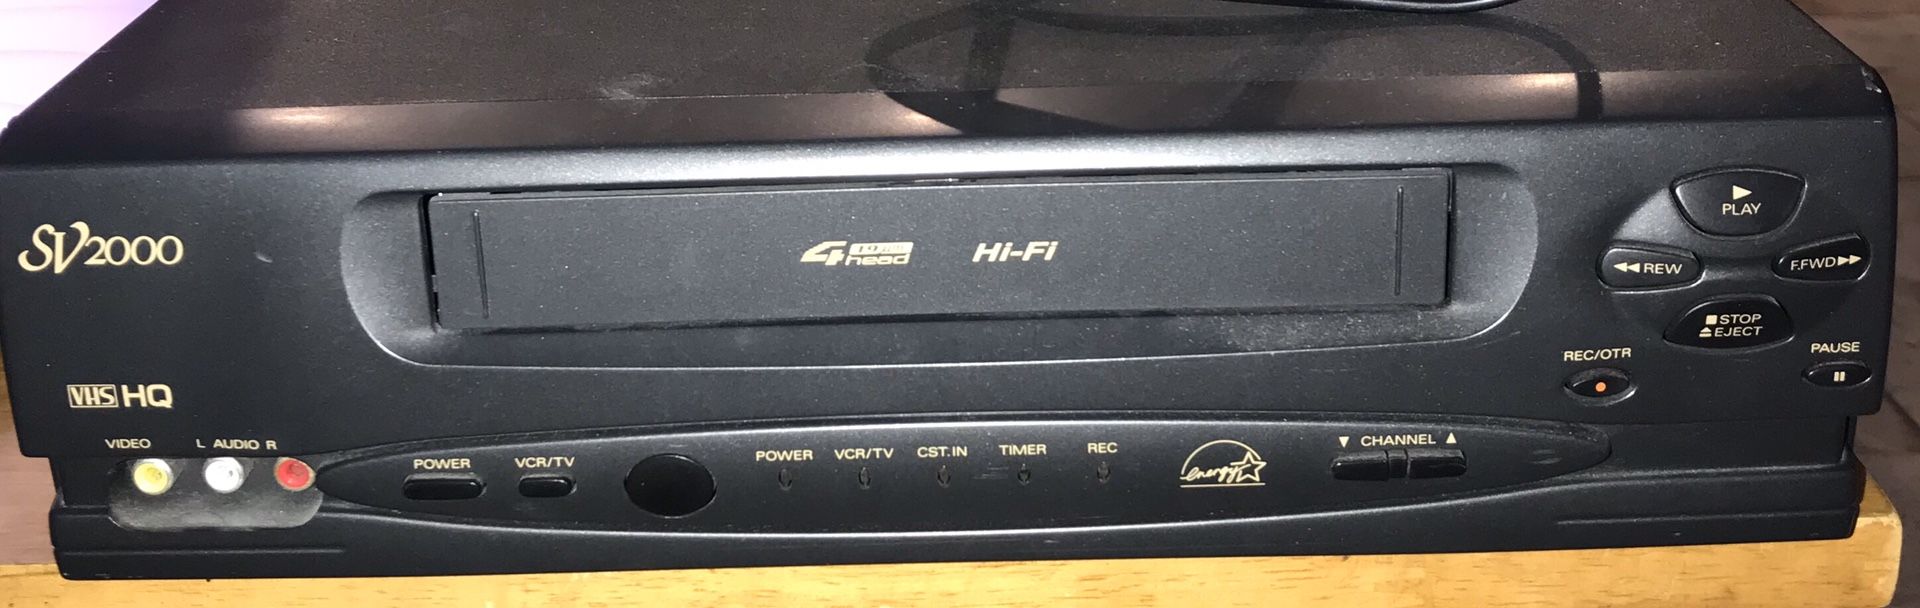 VHS #VCR 4 Head Hi-FI